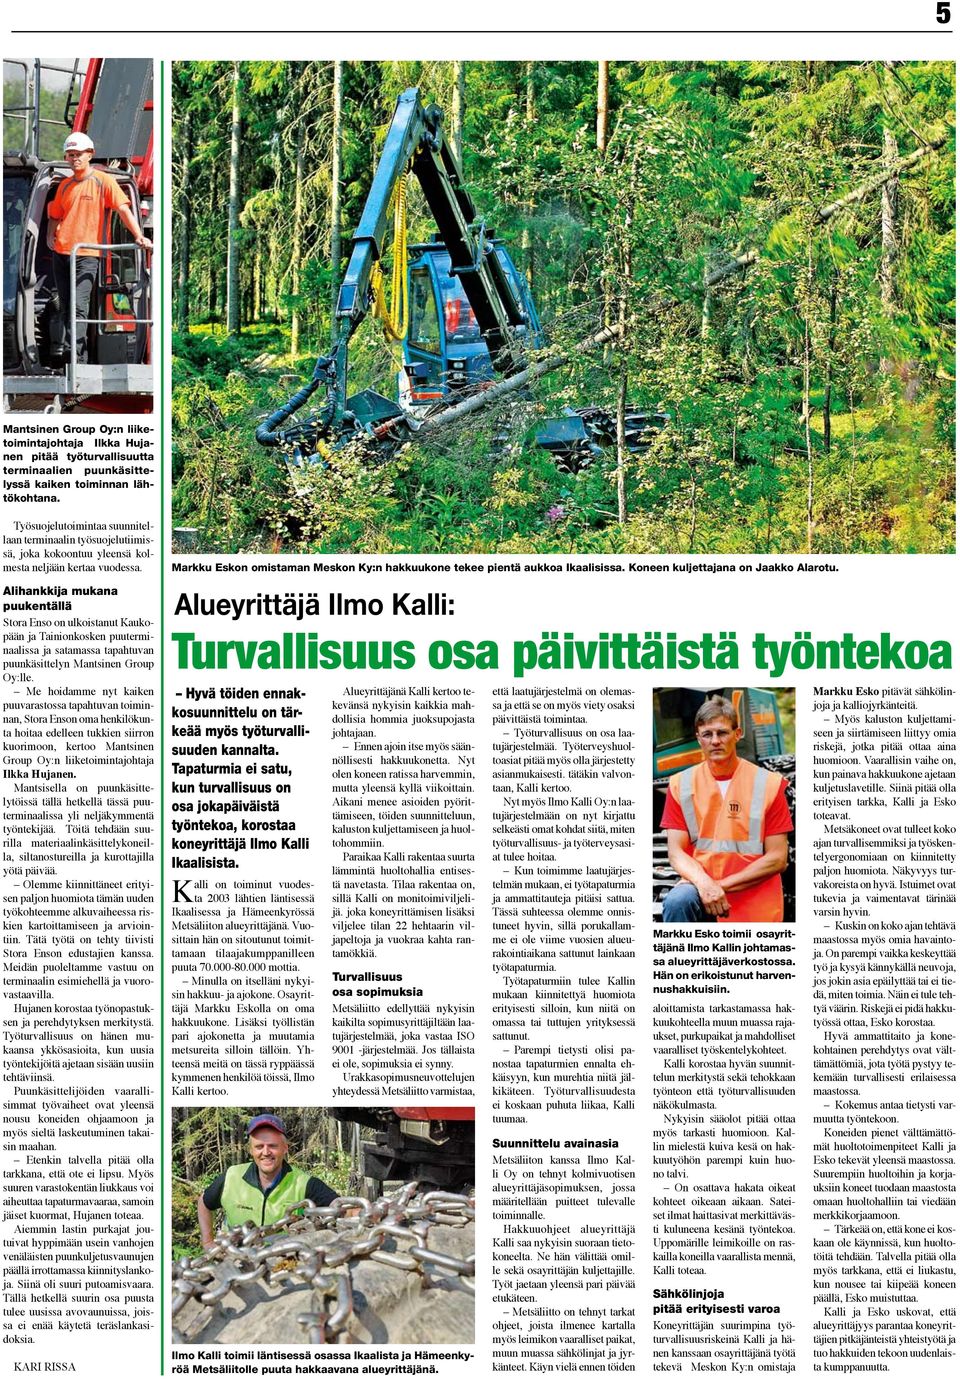 Alihankkija mukana puukentällä Stora Enso on ulkoistanut Kaukopään ja Tainionkosken puuterminaalissa ja satamassa tapahtuvan puunkäsittelyn Mantsinen Group Oy:lle.